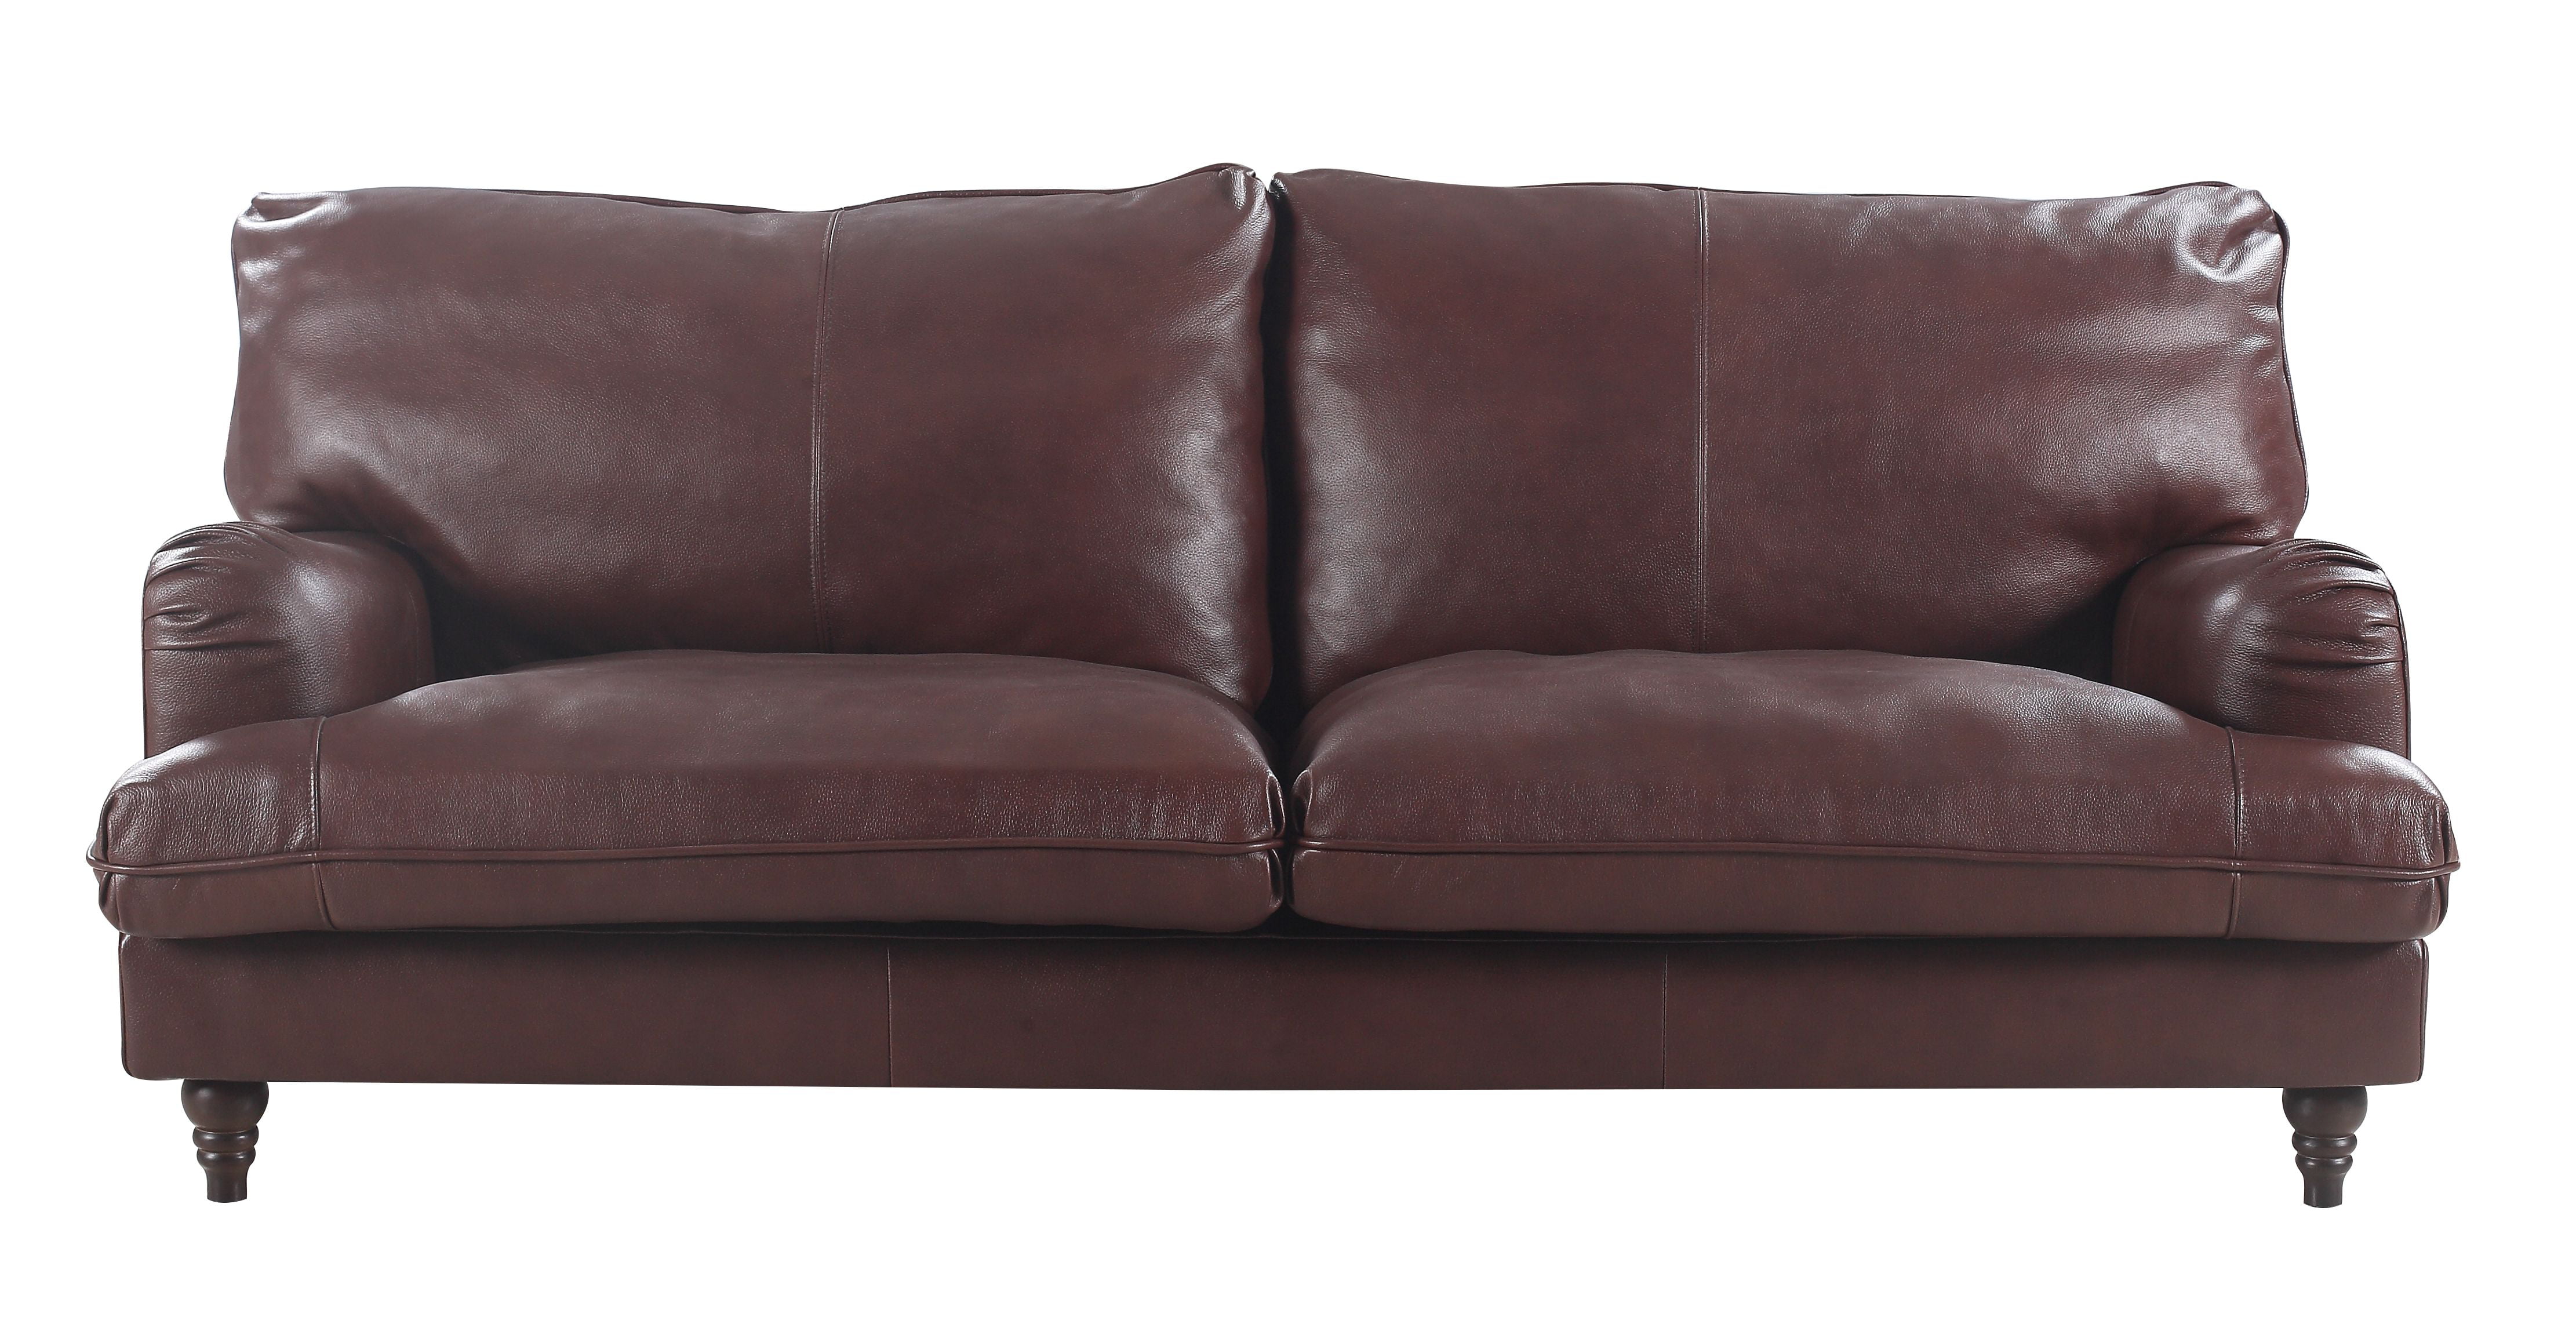 italian classic leather sofa furniture